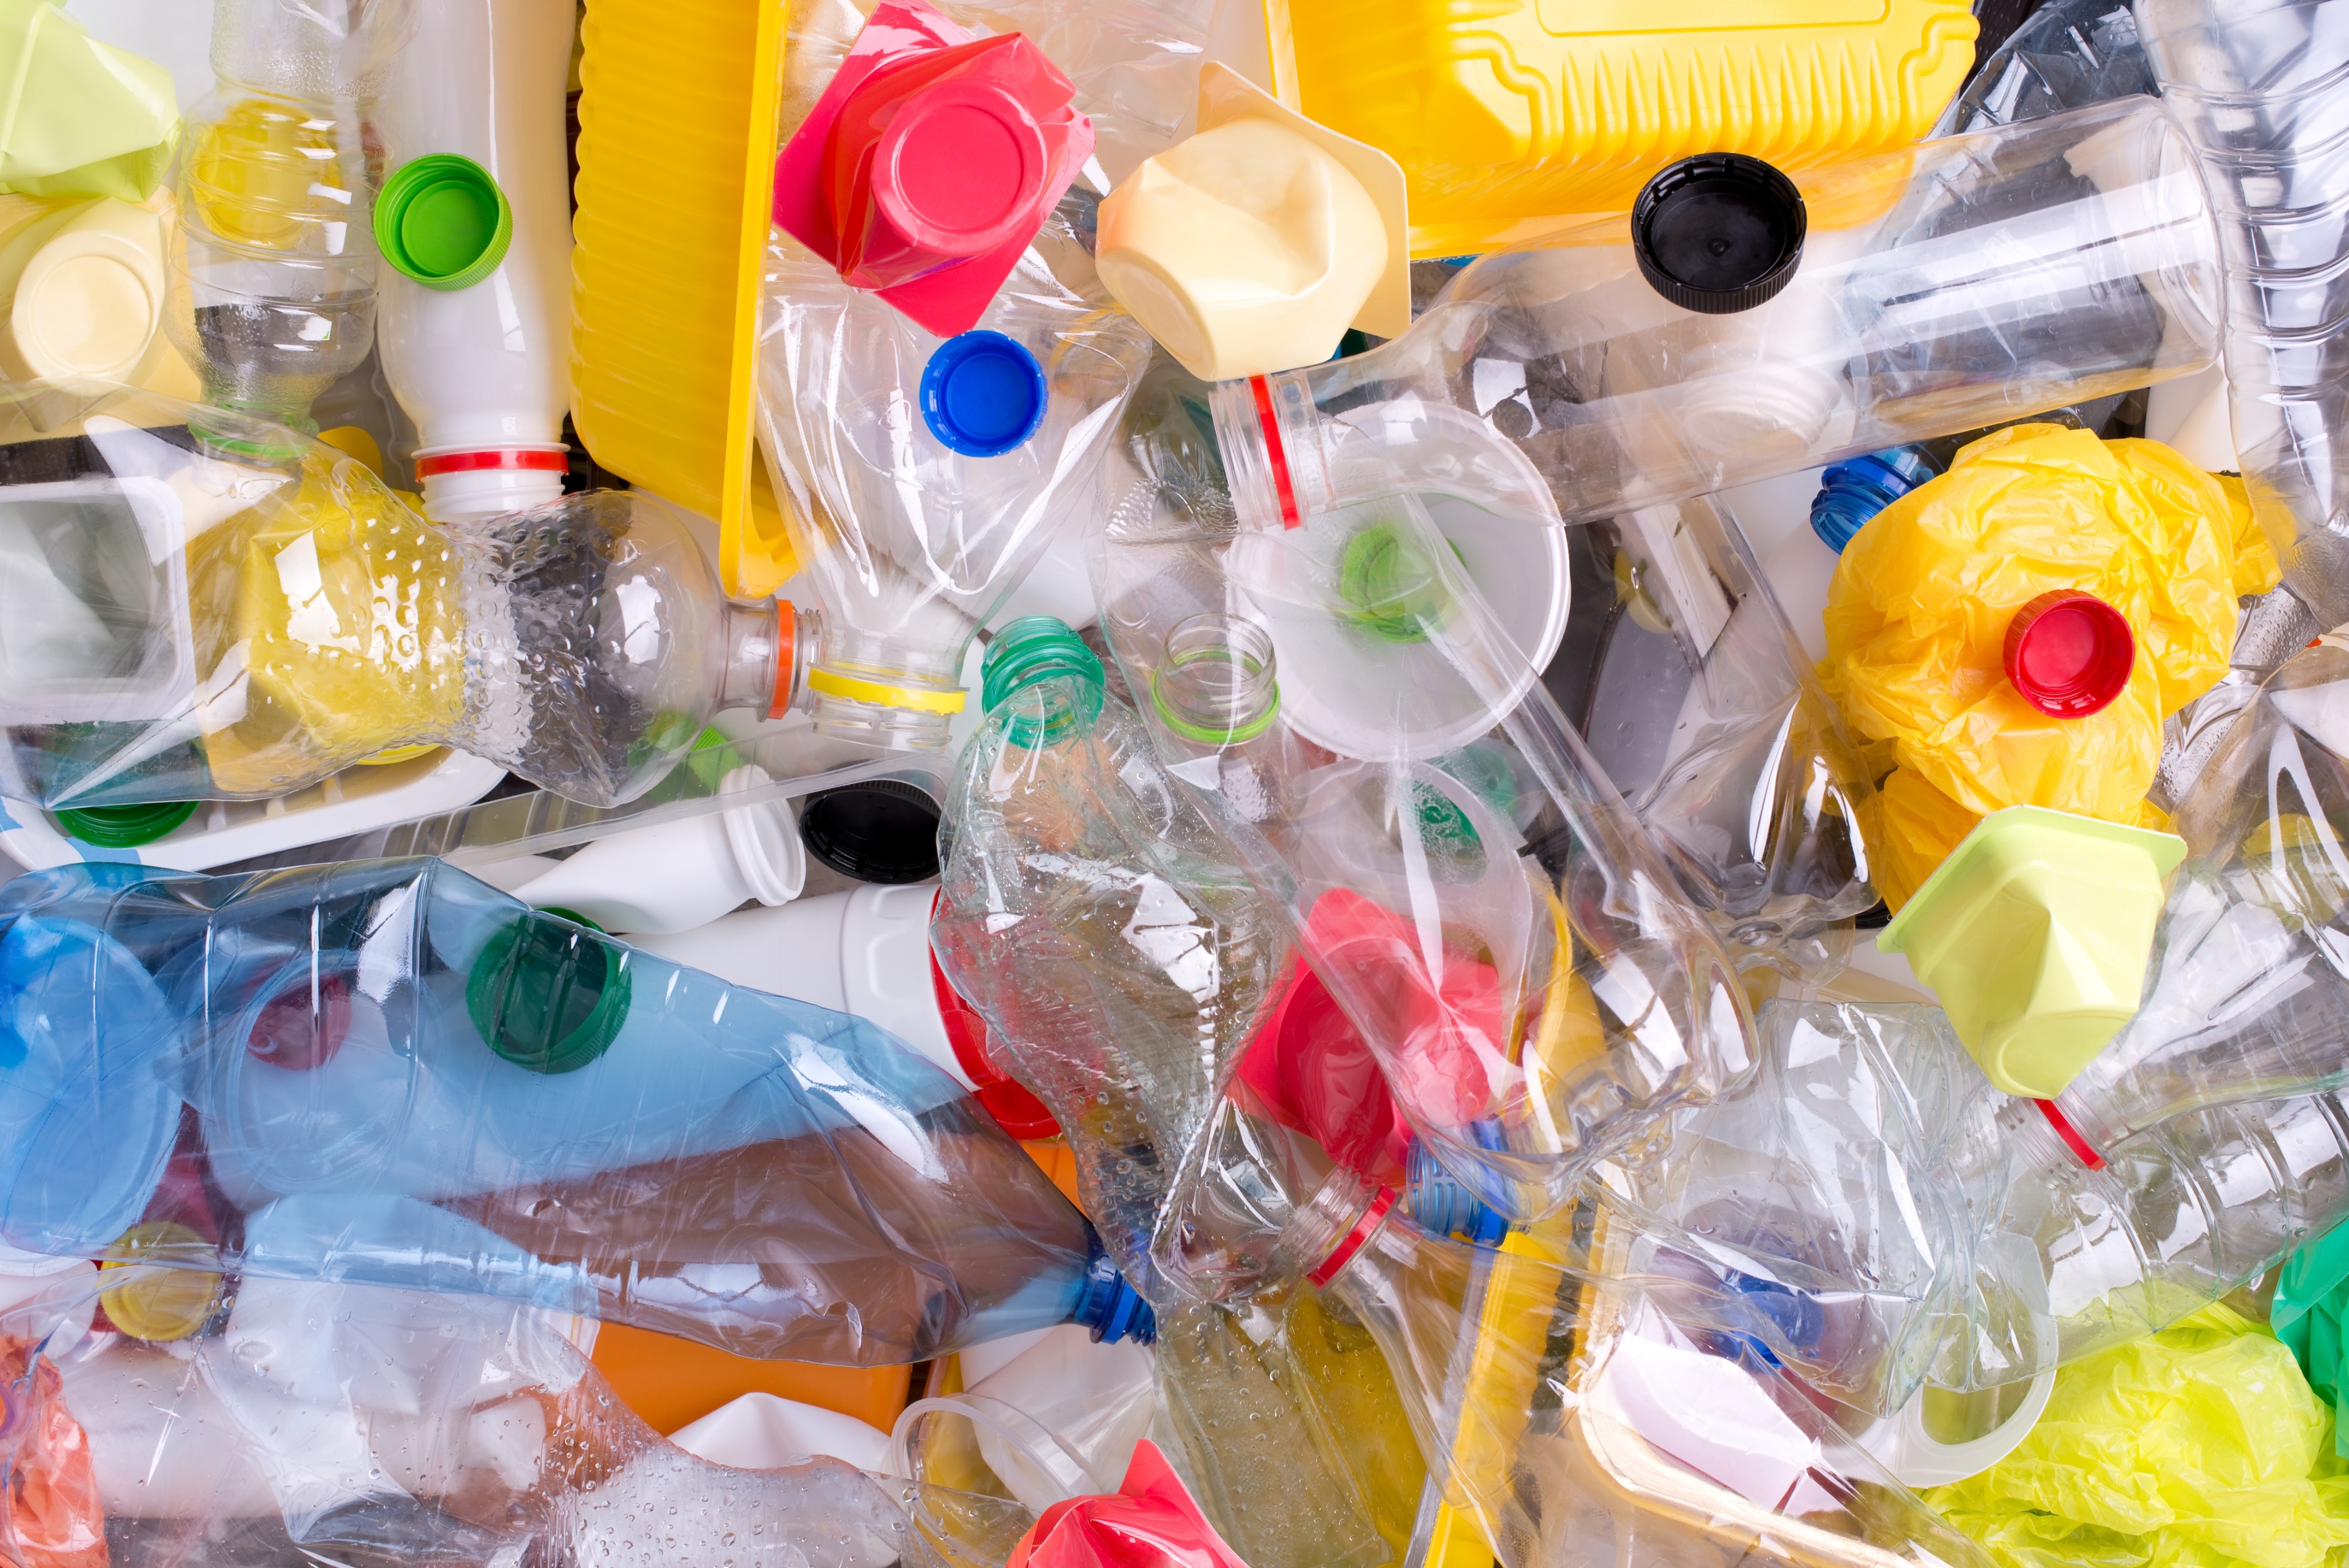 Des déchets plastiques de toutes sortes, notamment des bouteilles, des sacs et des contenants, sont accumulés.